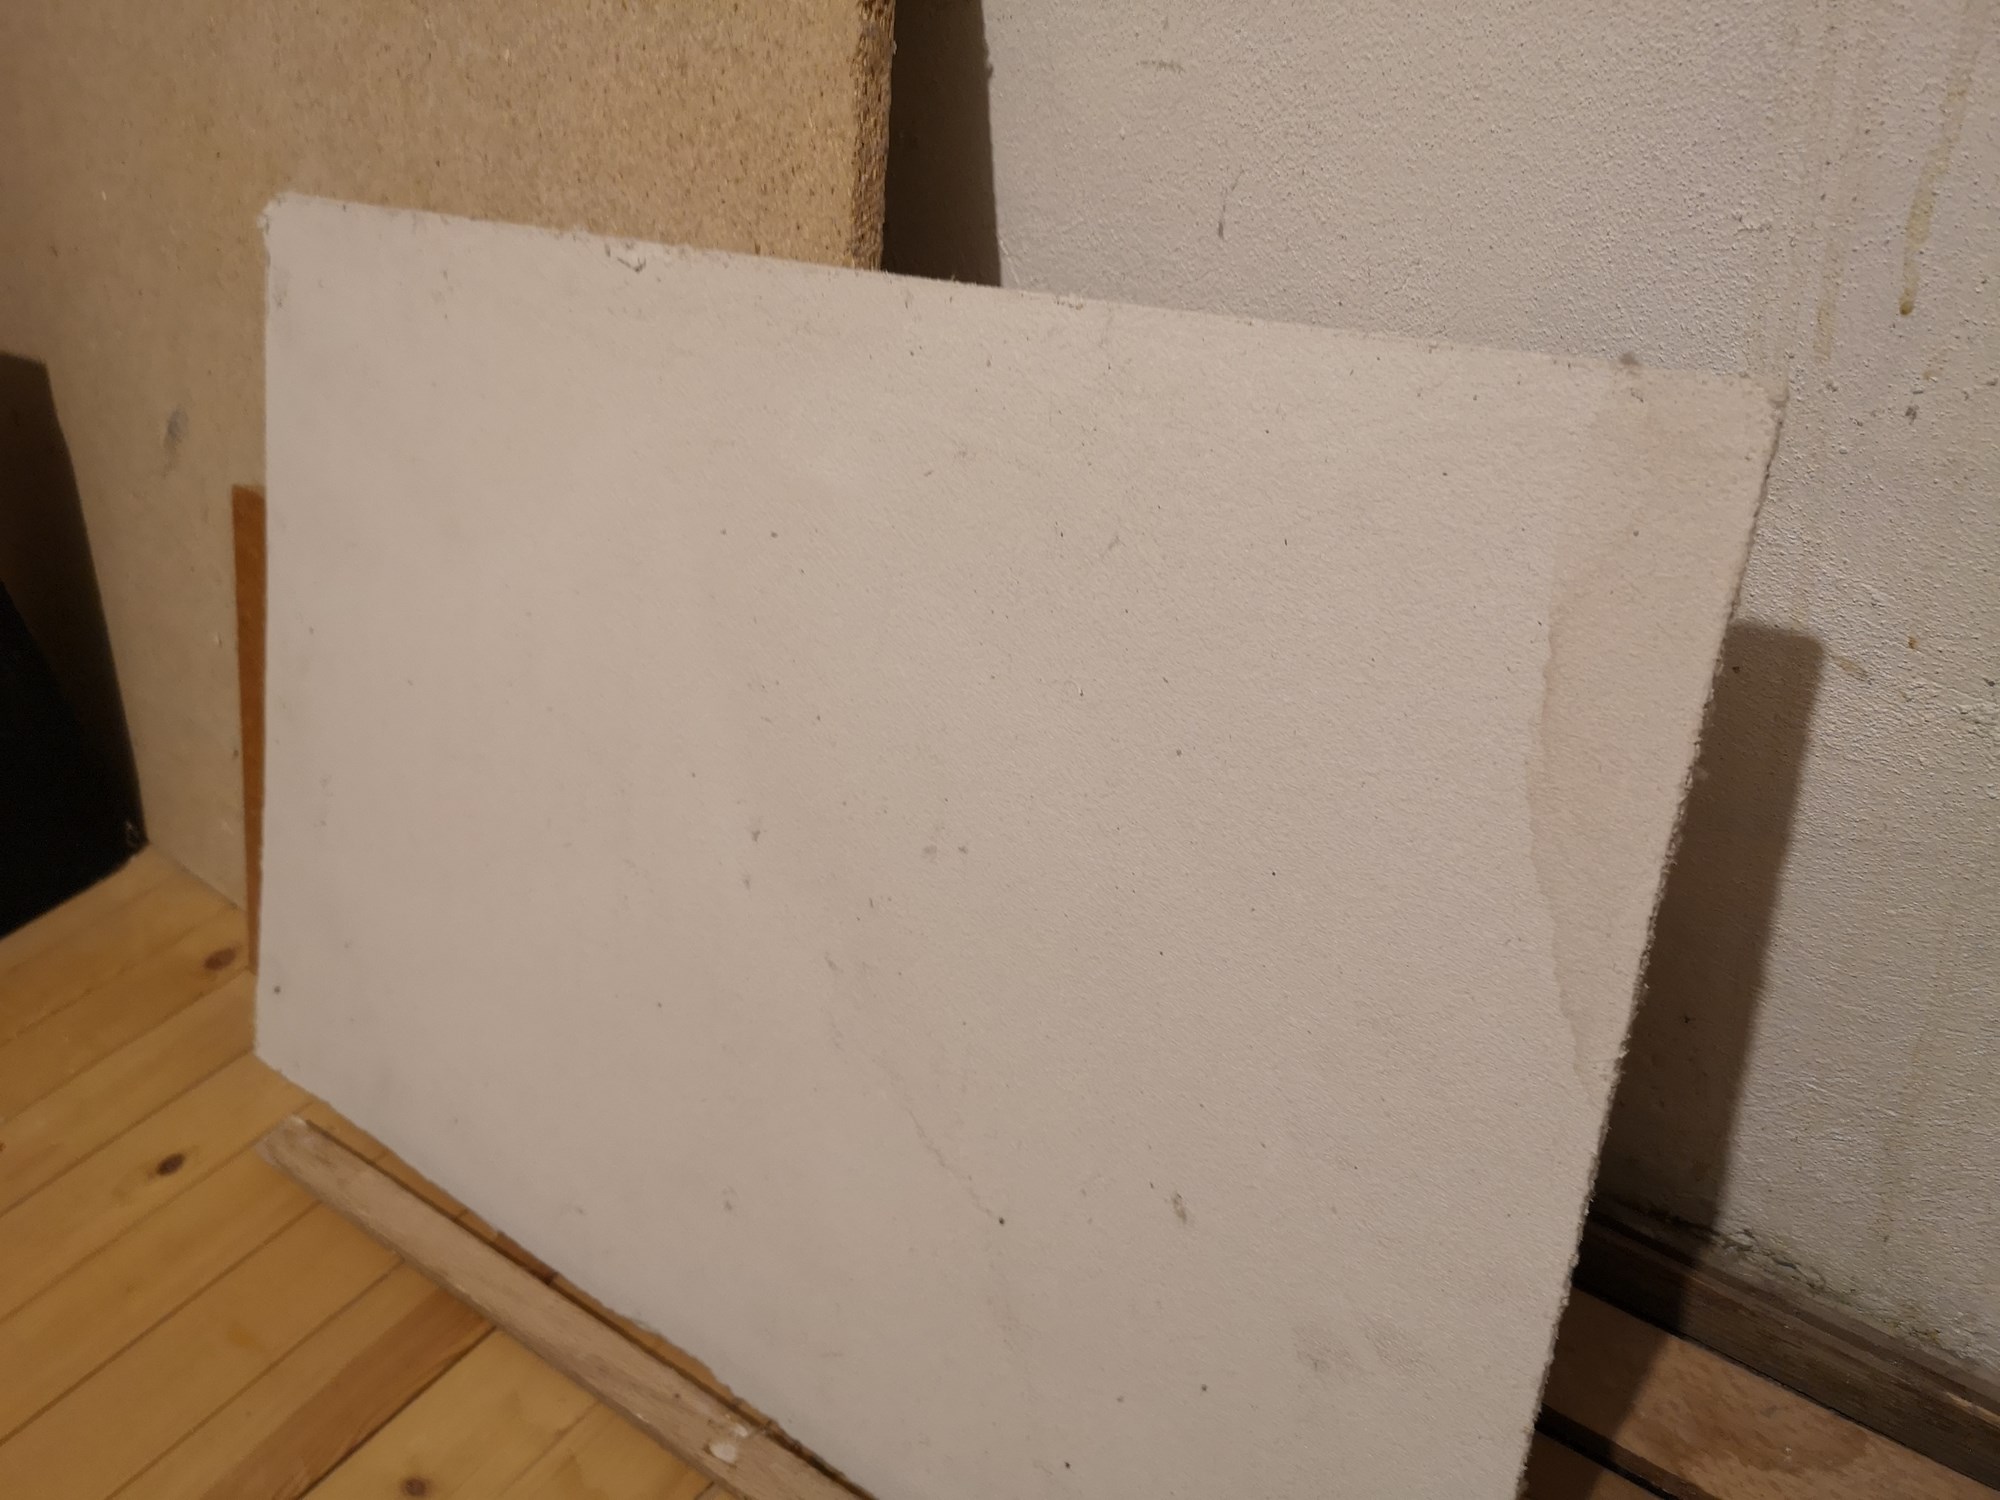 Jeg har funnet noen mistenkelige plater, kan det være asbest i dem? - IMG_20180928_104109.jpg - Landlord